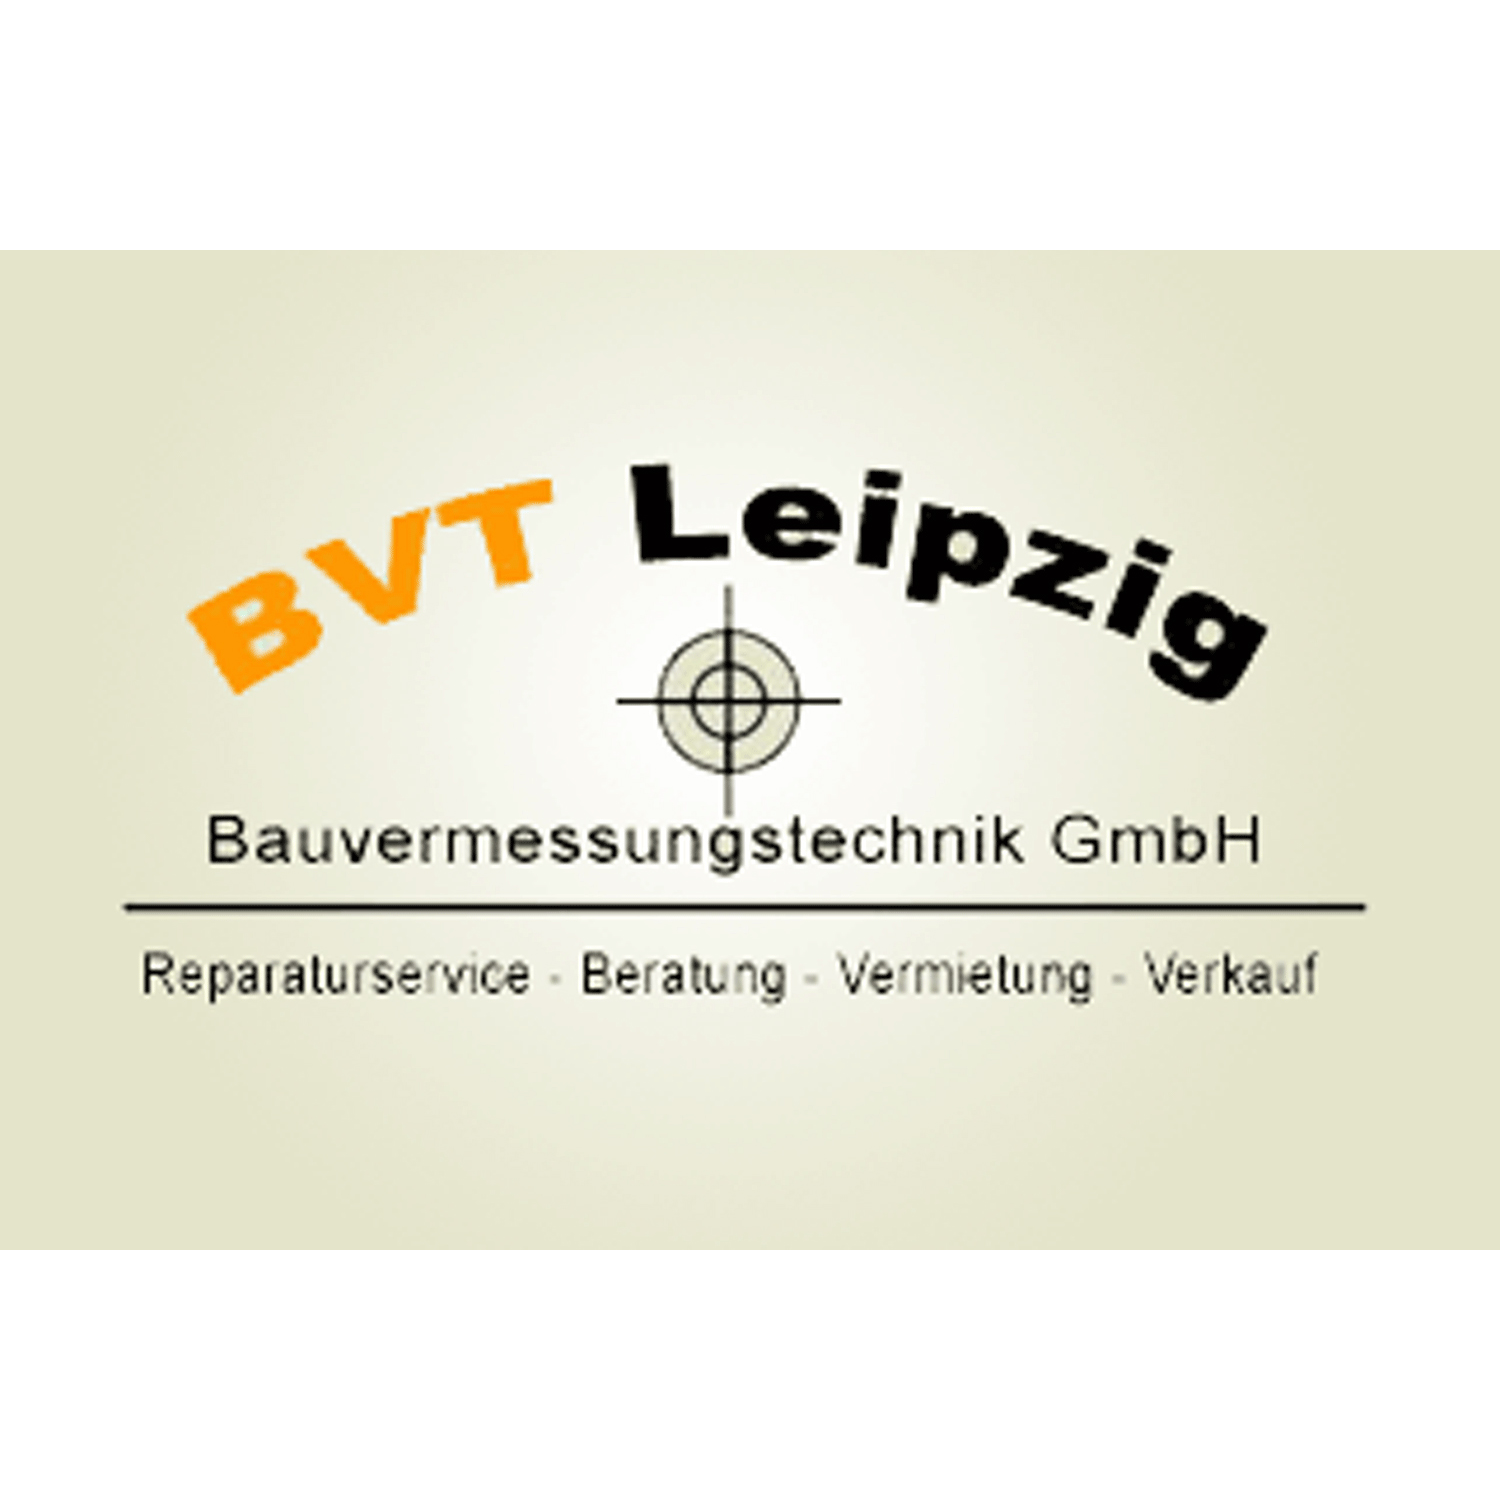 Logo BVT Leipzig Bauvermessungstechnik GmbH